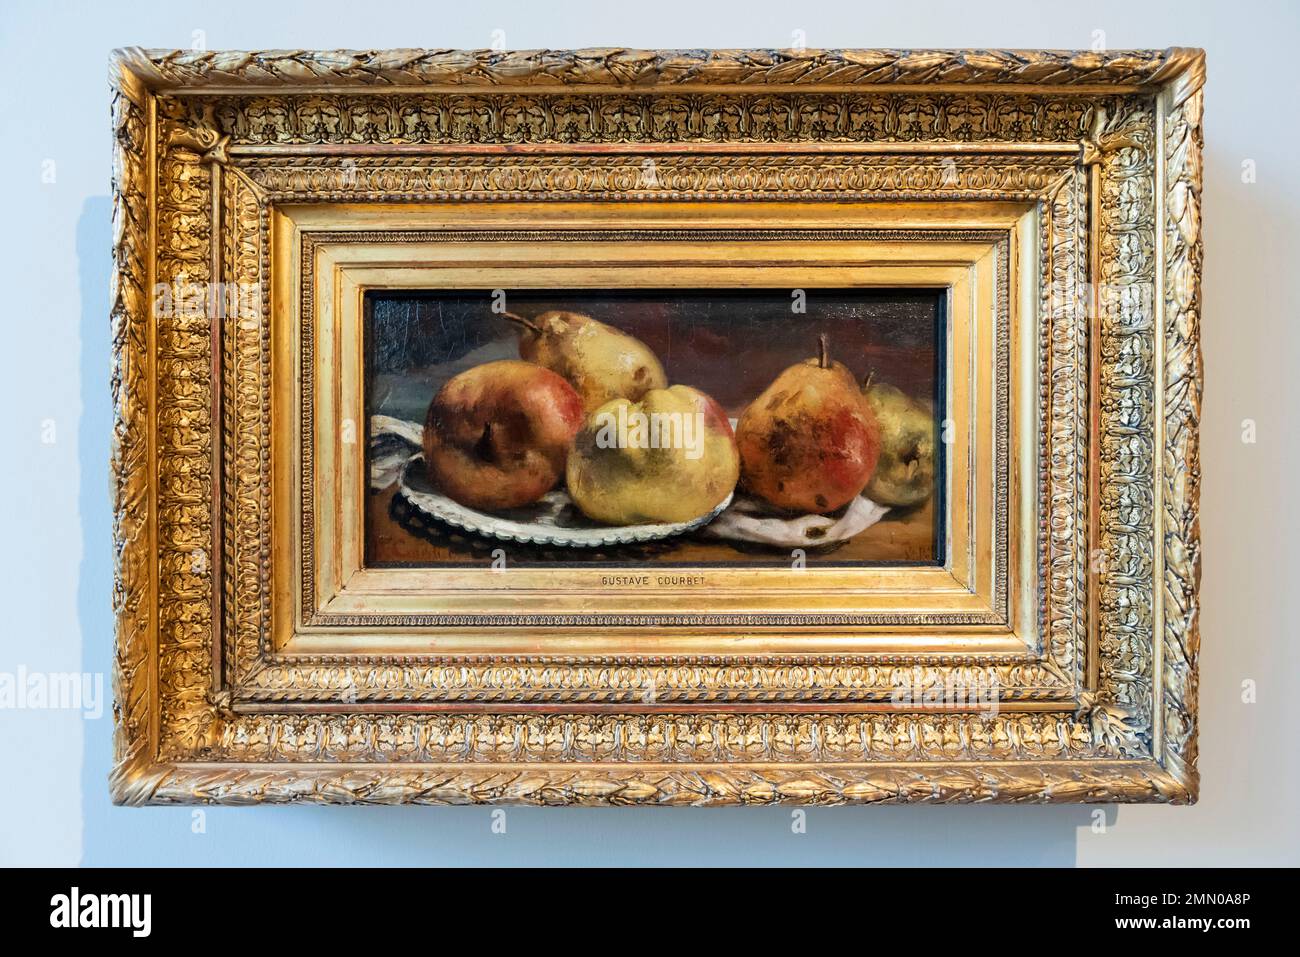 Regno Unito, Scozia, Glasgow, The Burrell Collection, frutta di Gustave Courbet, olio su tela circa 1871 - 1872 Foto Stock